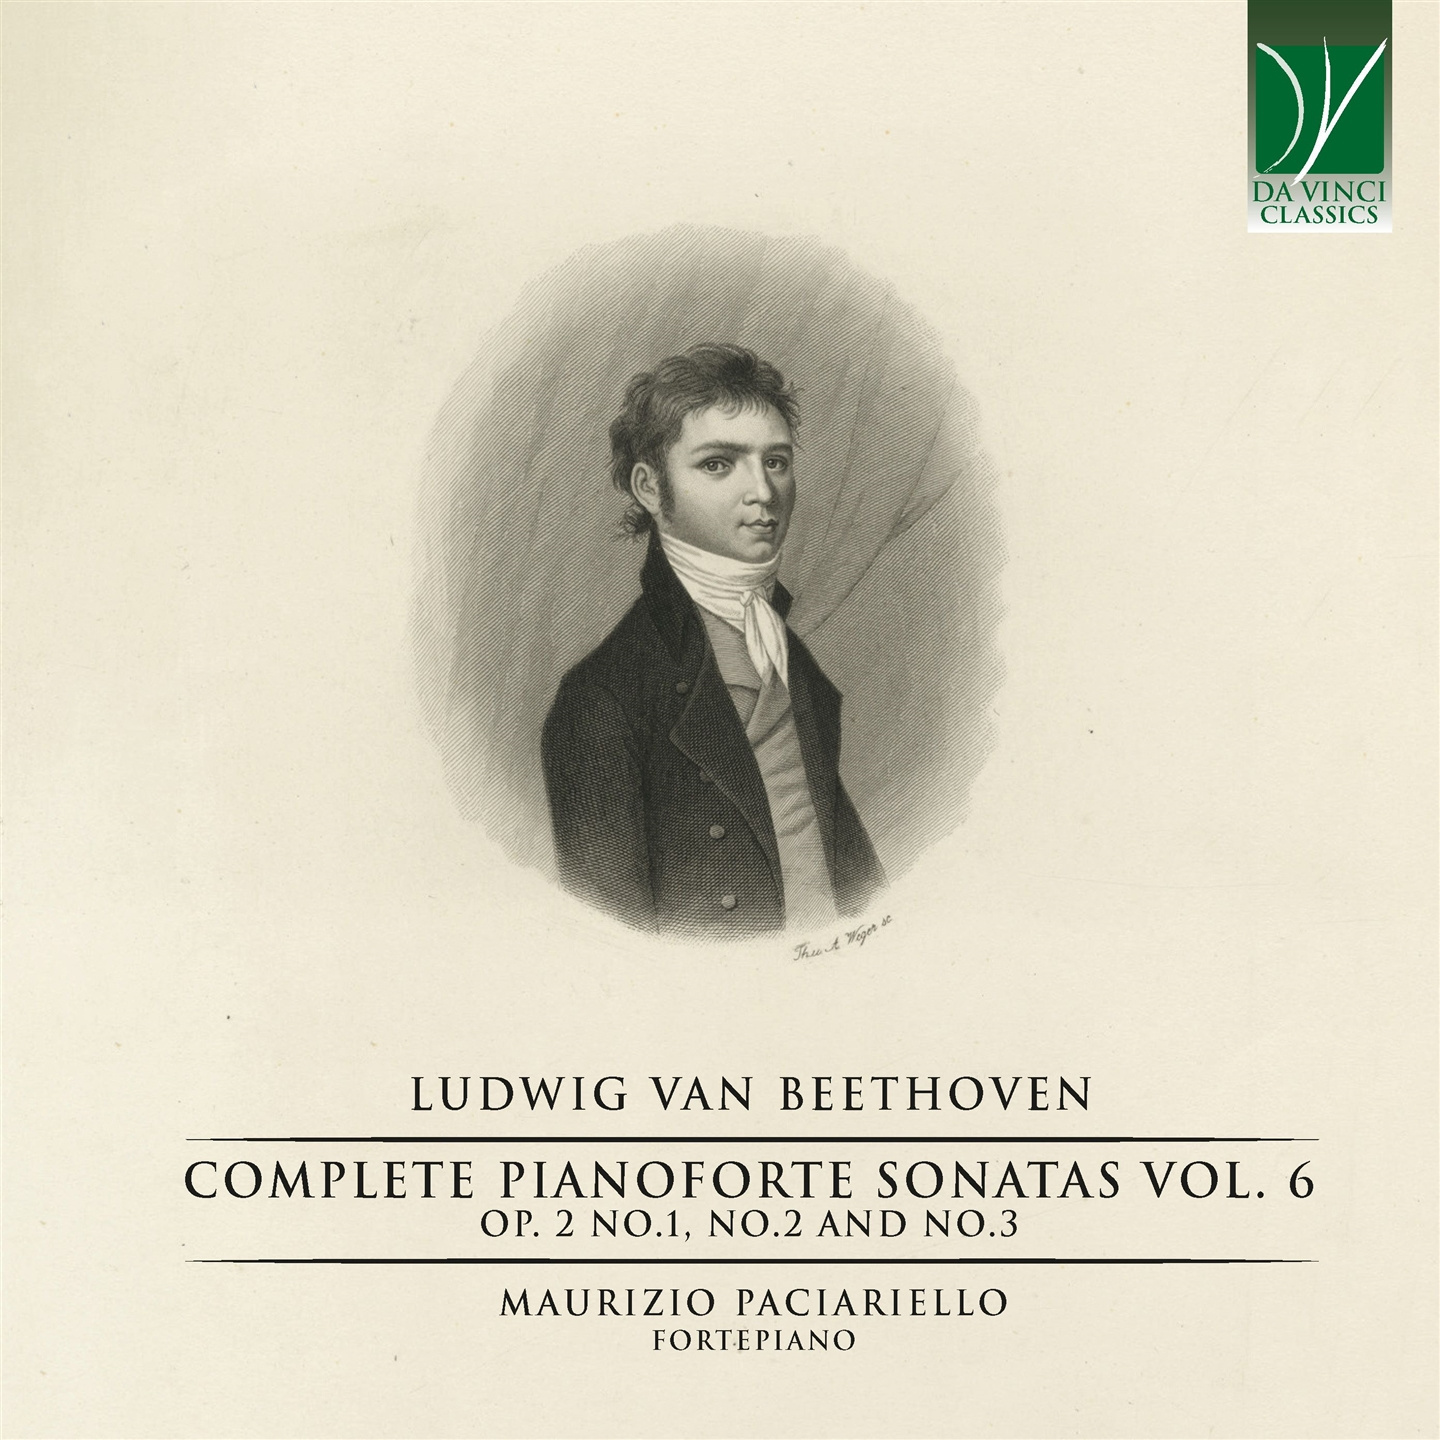 LUDWIG VAN BEETHOVEN: COMPLETE PIANOFORTE SONATAS VOL. 6